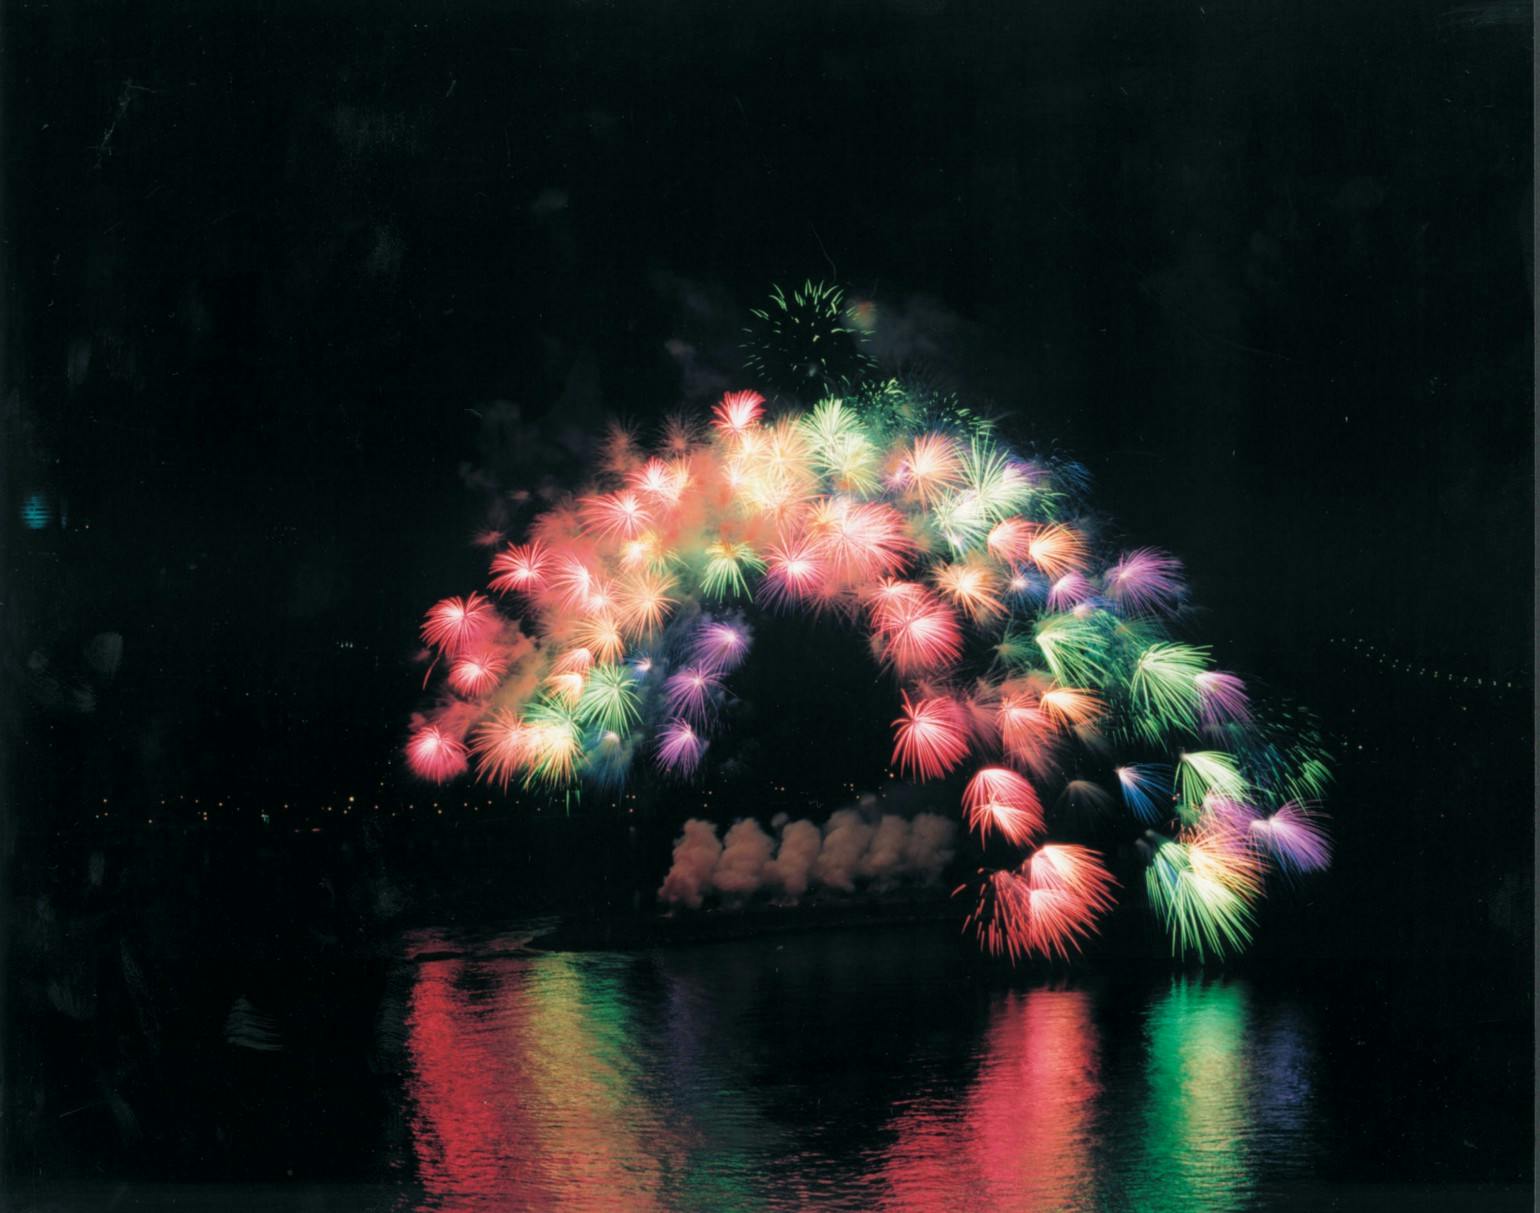 蔡国强，《移动彩虹》，2002。于纽约的东河上实施、从曼哈顿到皇后区，纽约， 6月29日，晚上9:30分, 历时15秒钟。1000枚3英吋大小、安装了电脑芯片的彩色牡丹花型焰火，爆破半径约200米